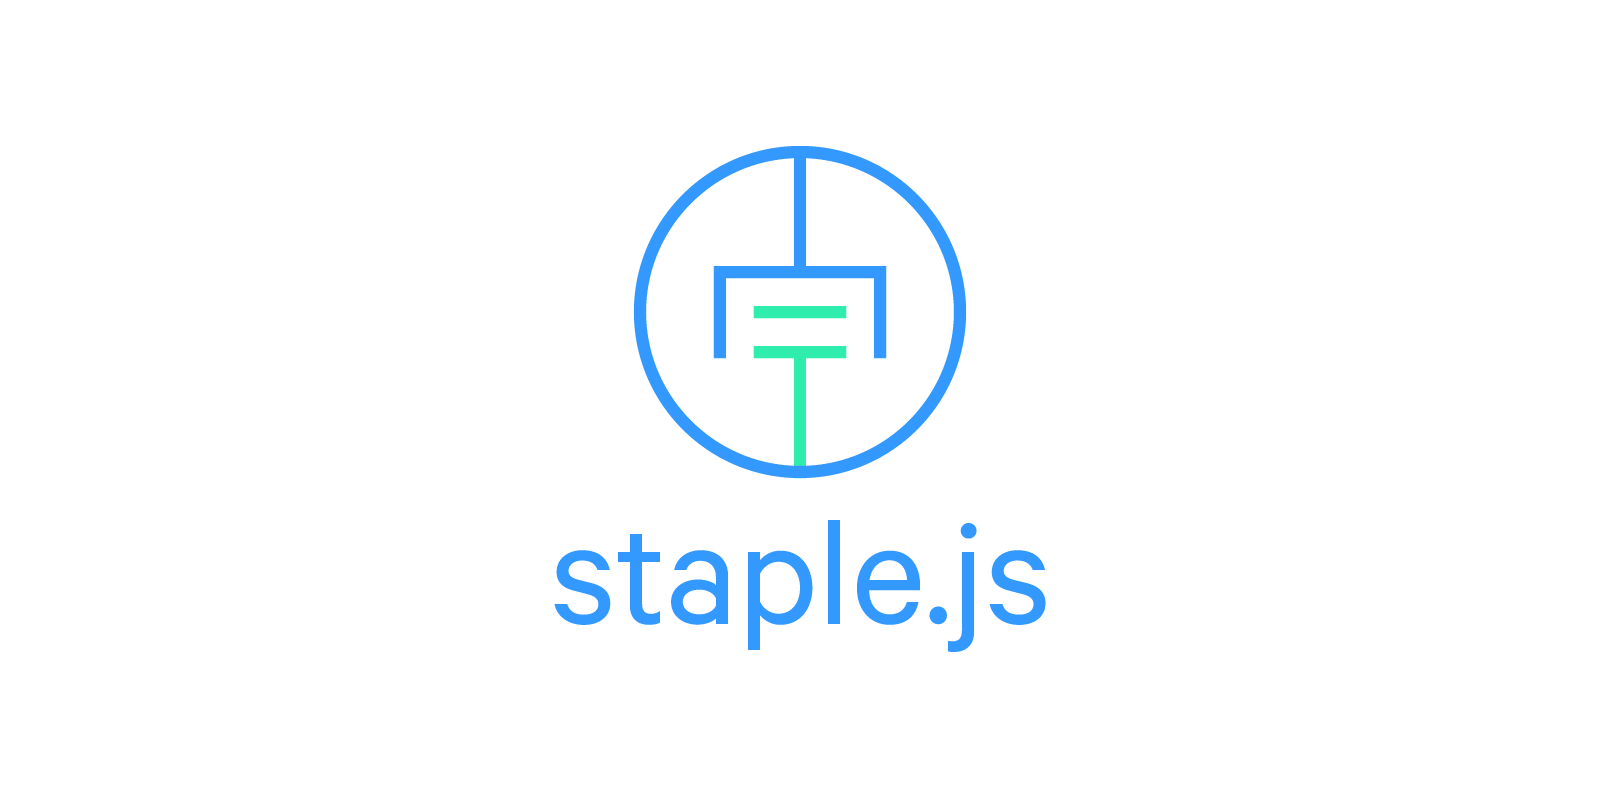 staple.js logo